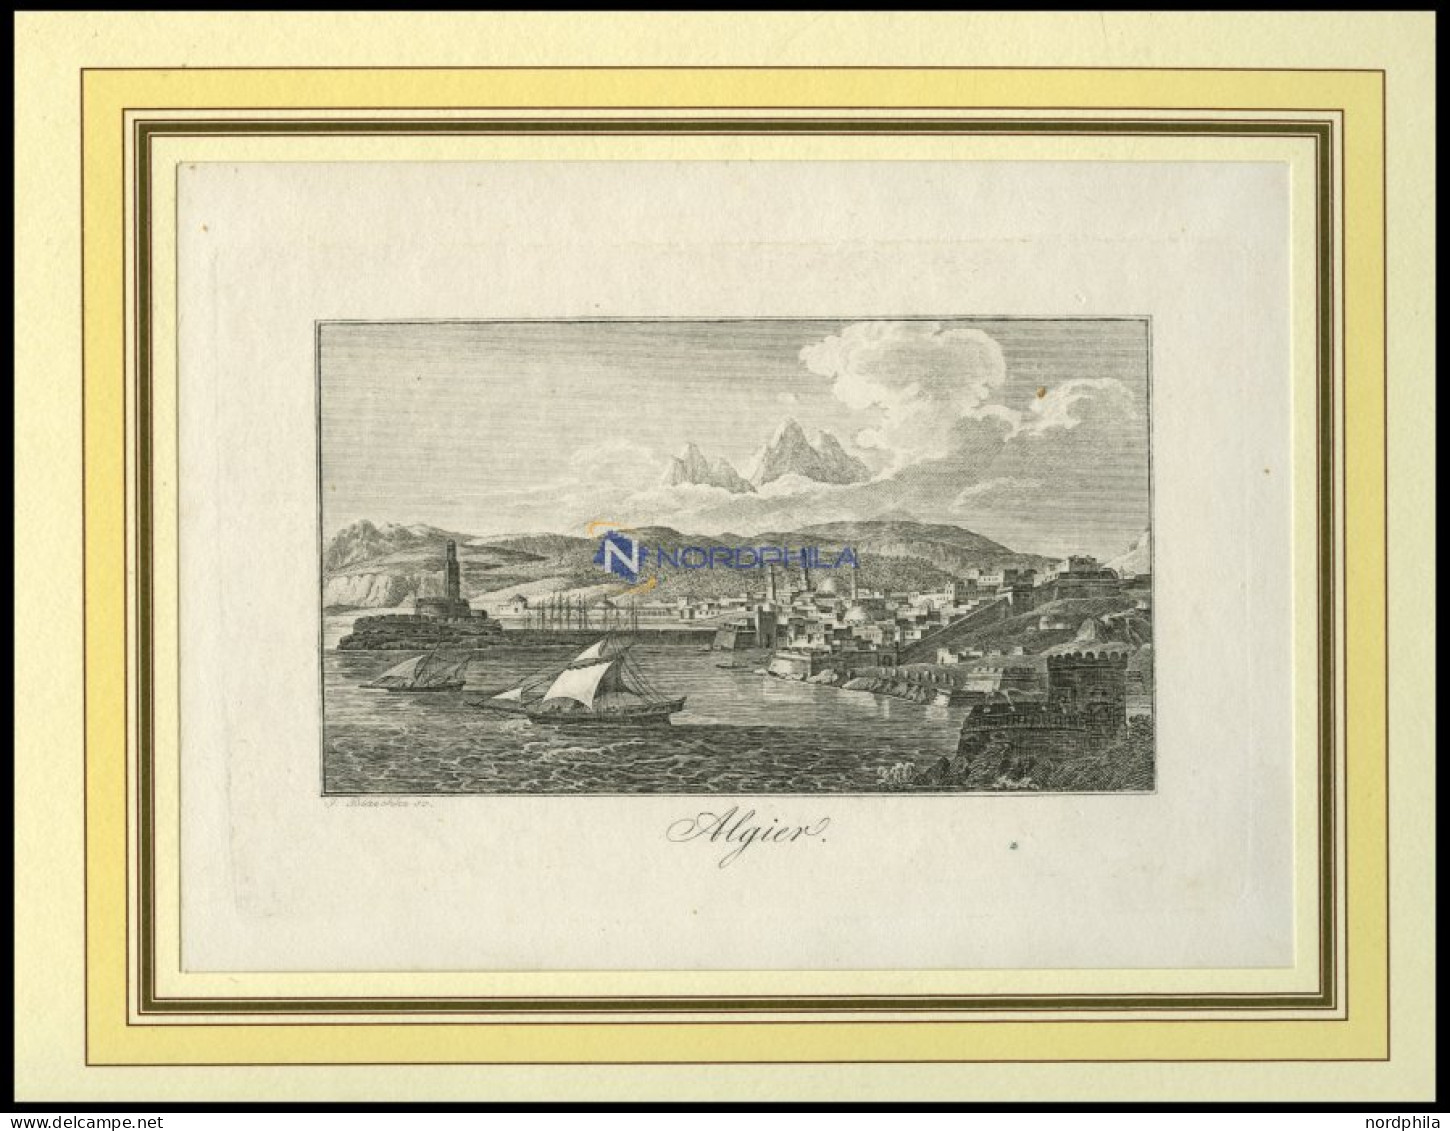 ALGERIEN: Algier, Gesamtansicht, Kupferstich Von Blaschke Um 1830 - Lithographien